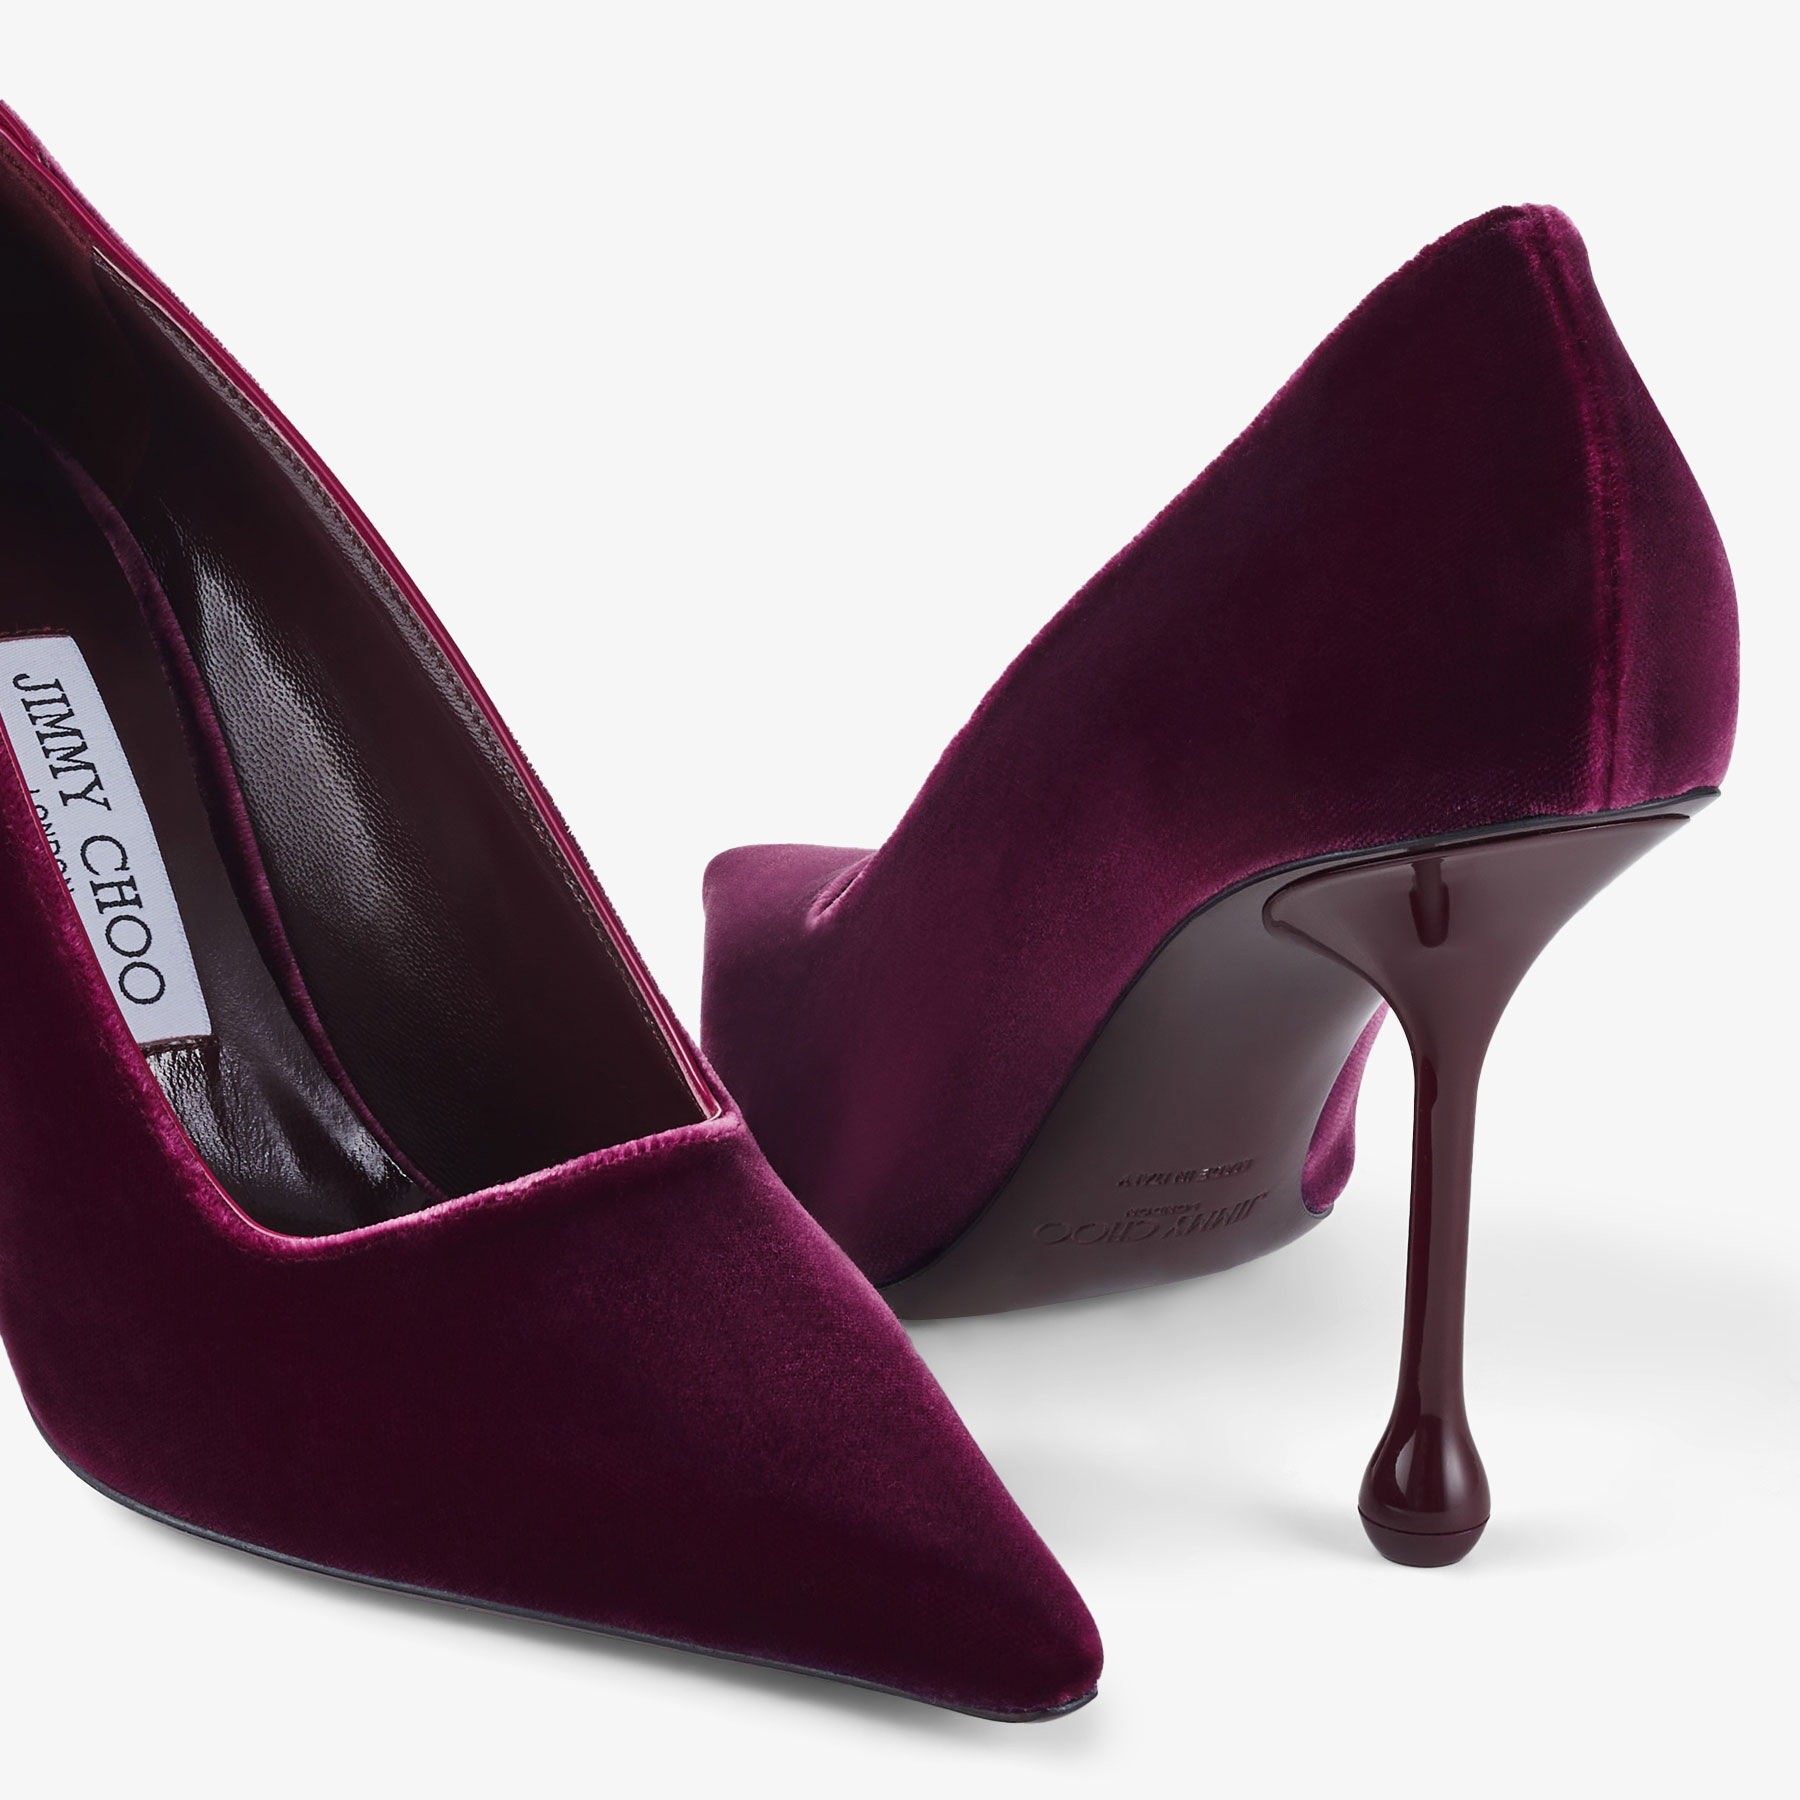 IXIA 95 | 博伊森莓紫紅色丝绒高跟鞋 | 新品系列 | JIMMY CHOO